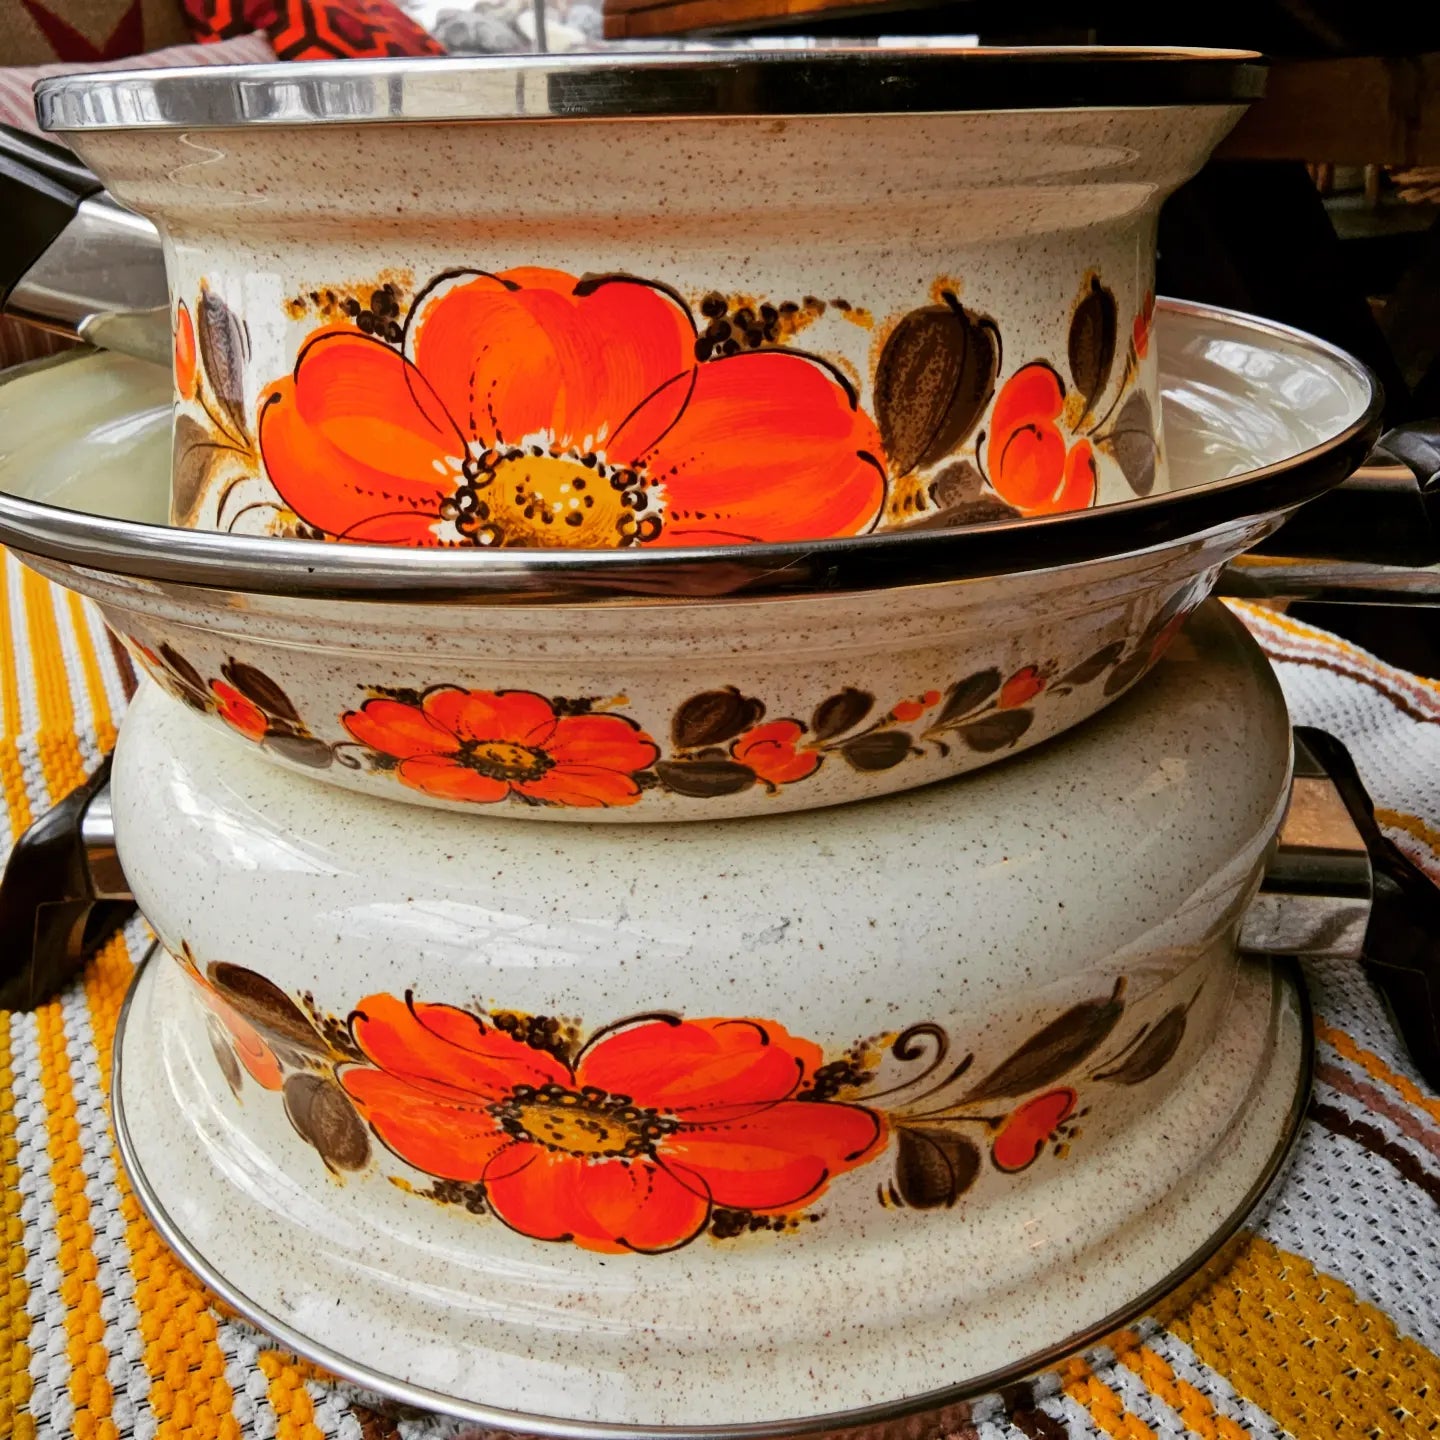 Set of 4 Enamel Pans, Like New, 1970s, Floral Motif, Enamelled, DDR, East  Germany, Unique Set 